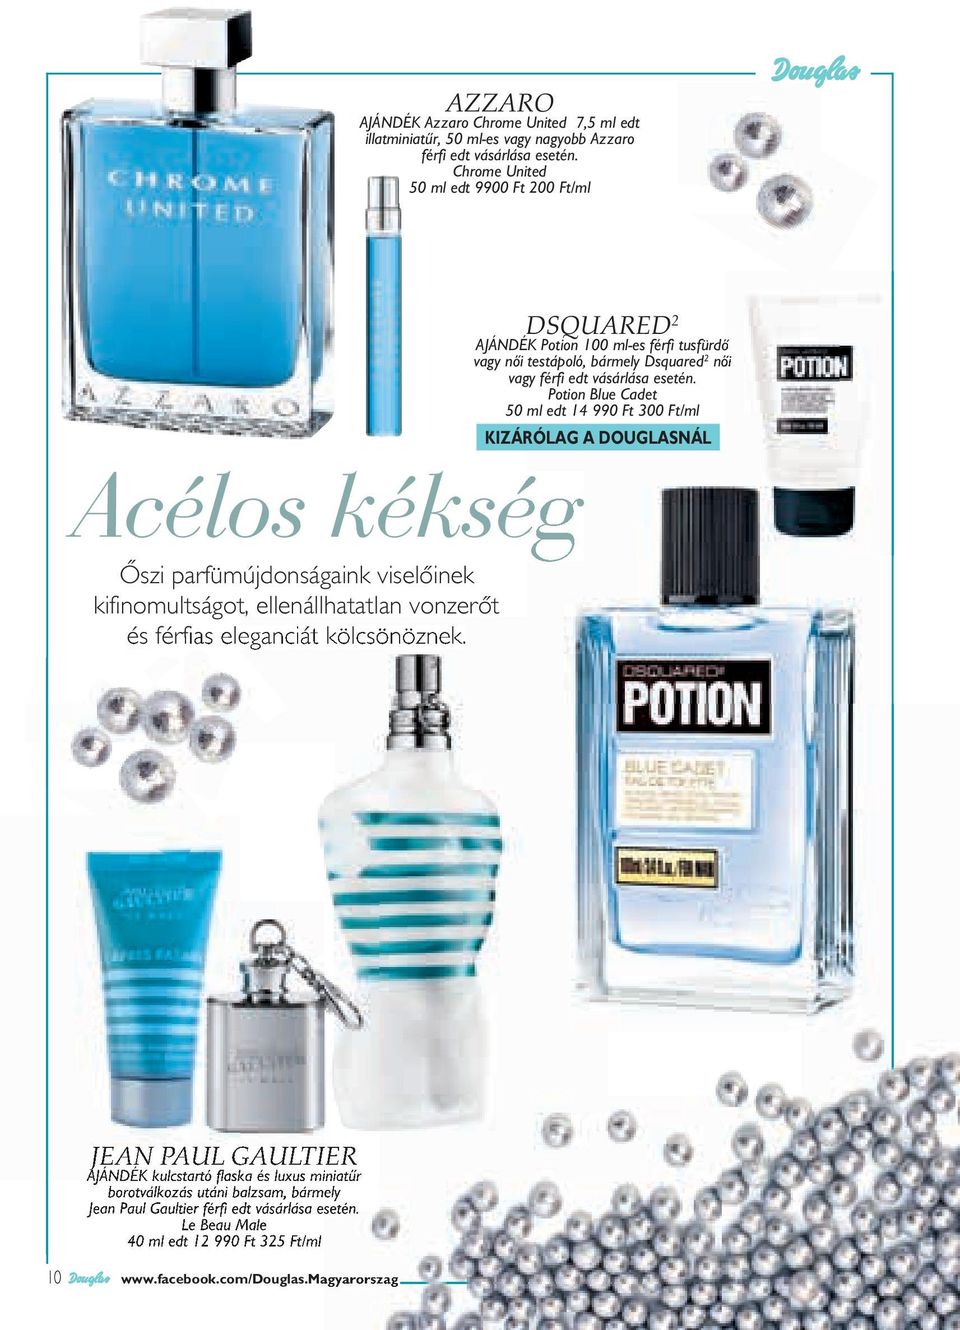 Potion Blue Cadet 50 ml edt 14 990 Ft 300 Ft/ml Acélos kékség Őszi parfümújdonságaink viselőinek kifinomultságot, ellenállhatatlan vonzerőt és férfias eleganciát